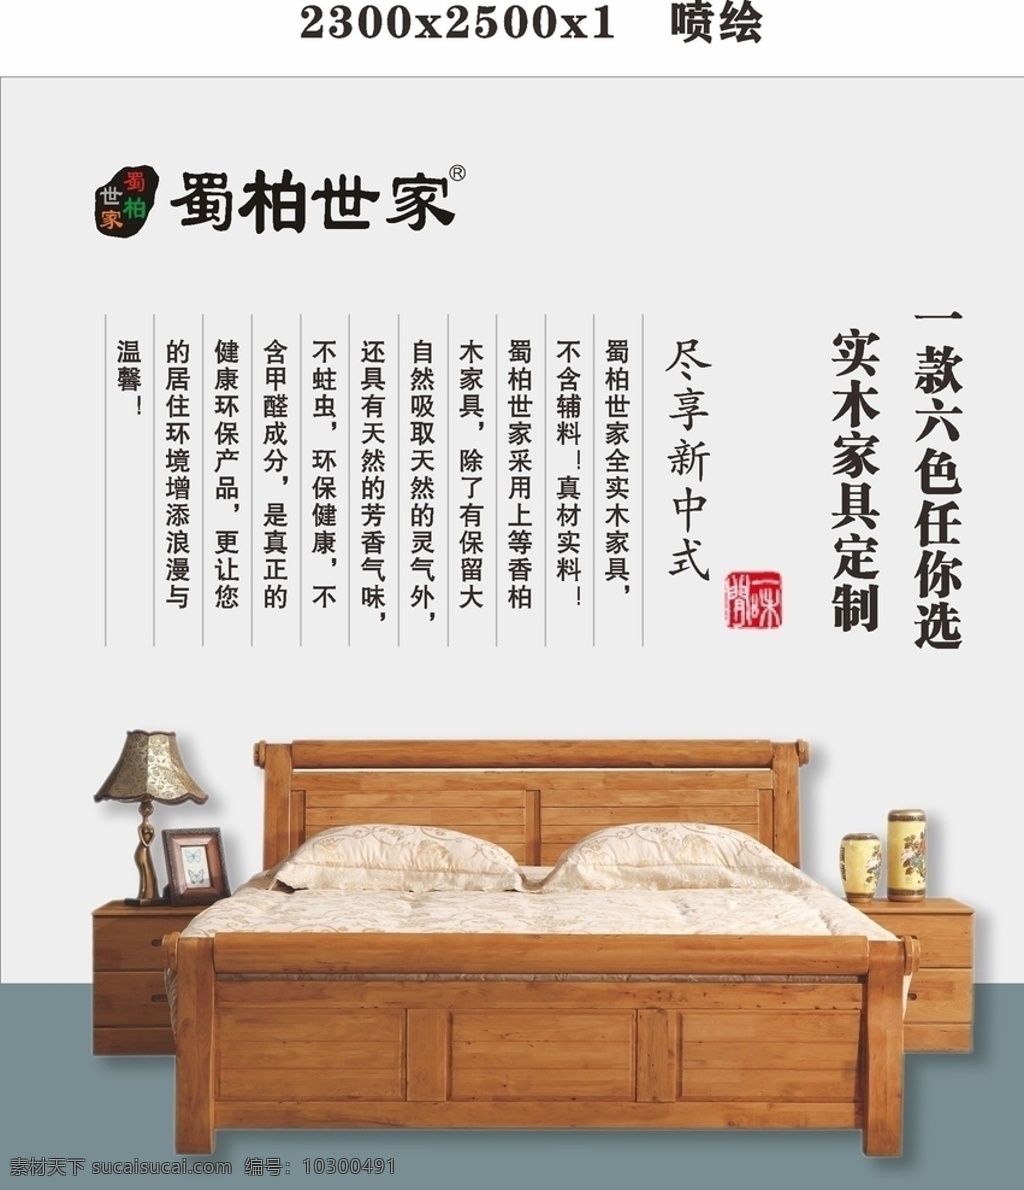 新 中式 实木家具 广告 实木家具广告 新中式家具 中式家具 灯箱海报